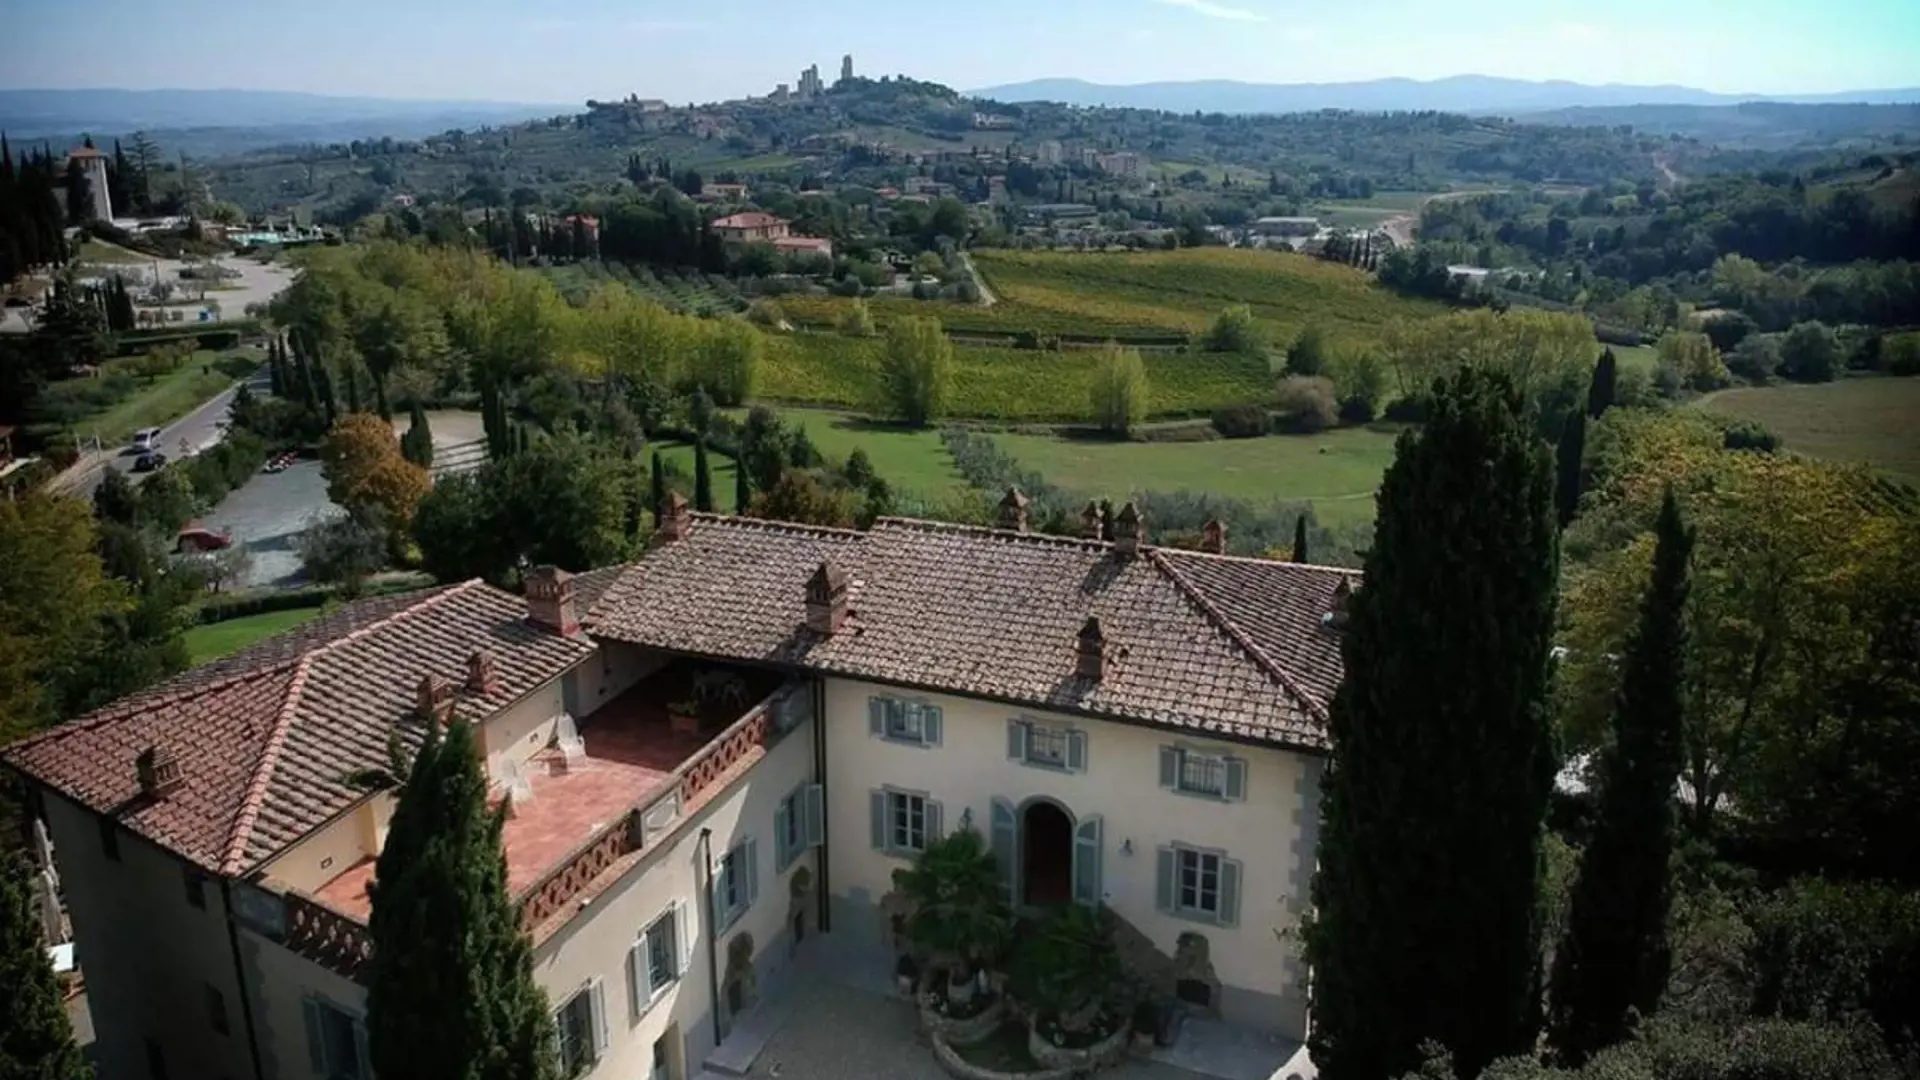 Ditt hotell i Toscana ligger like utenfor San Gimignano og har den fineste utsikten over byen.